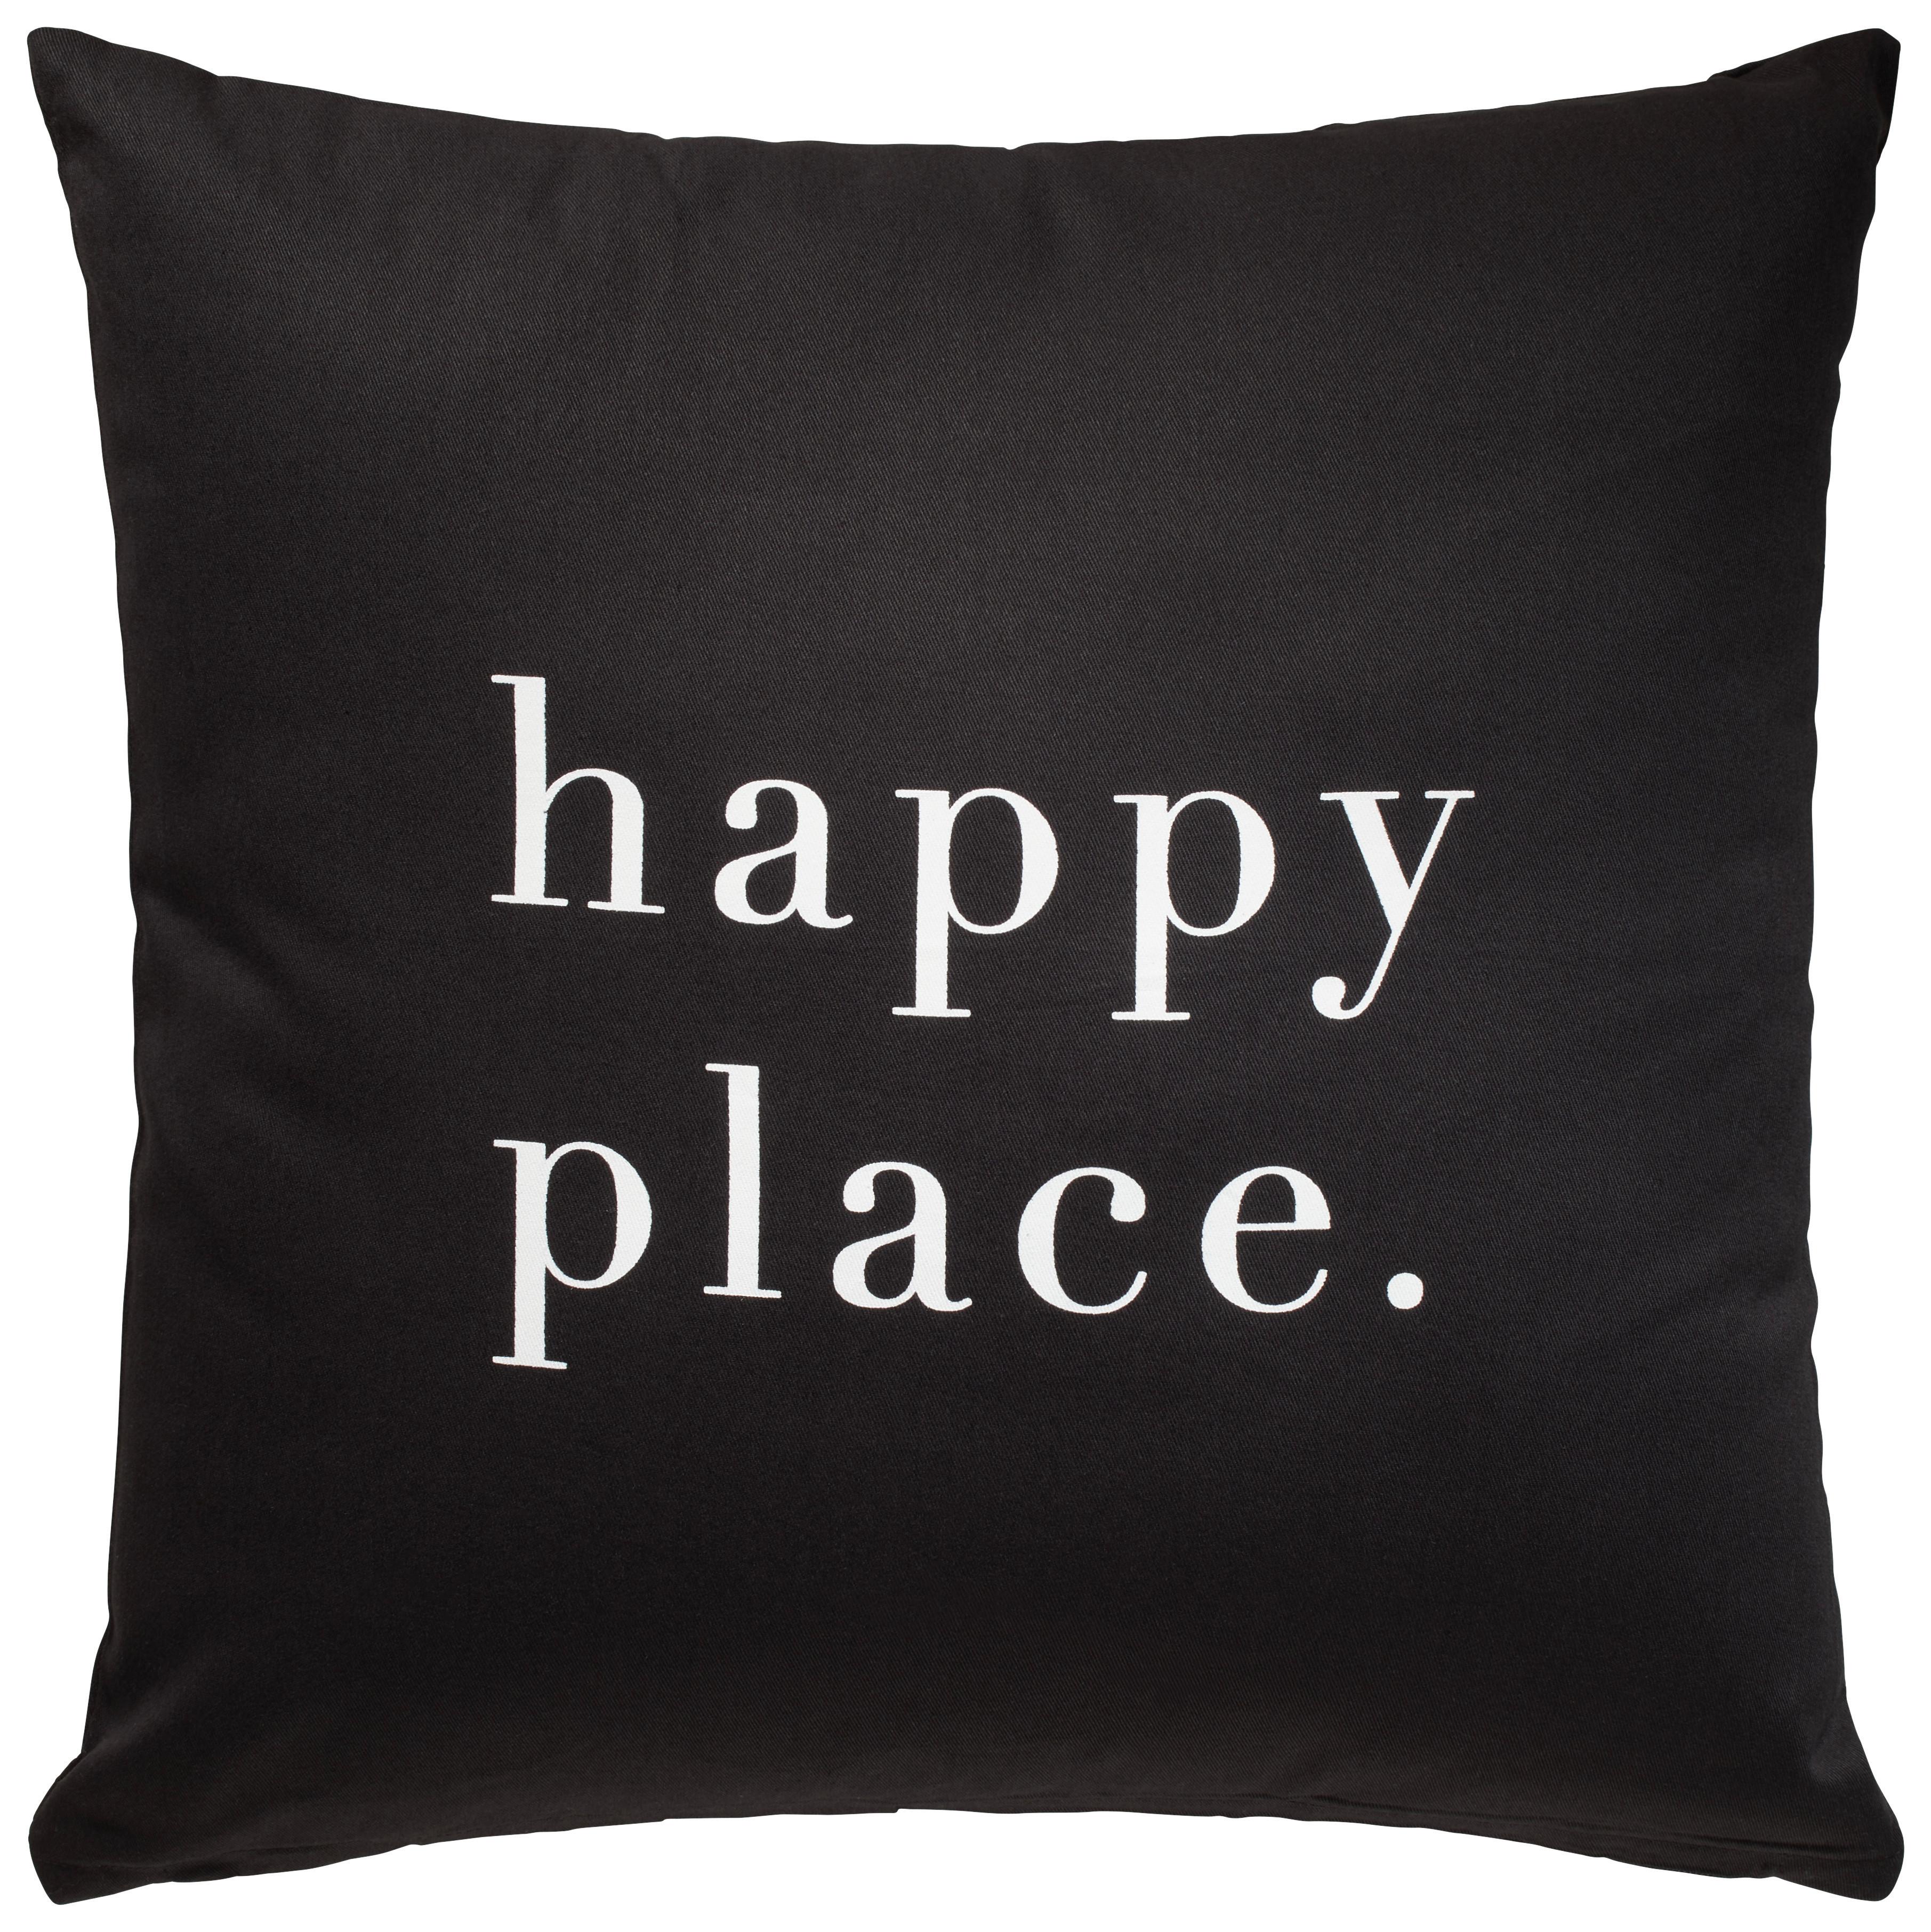 Dekorační Polštář Happy Place, 45/45cm, Černá - černá, Moderní, textil (45/45cm) - Modern Living